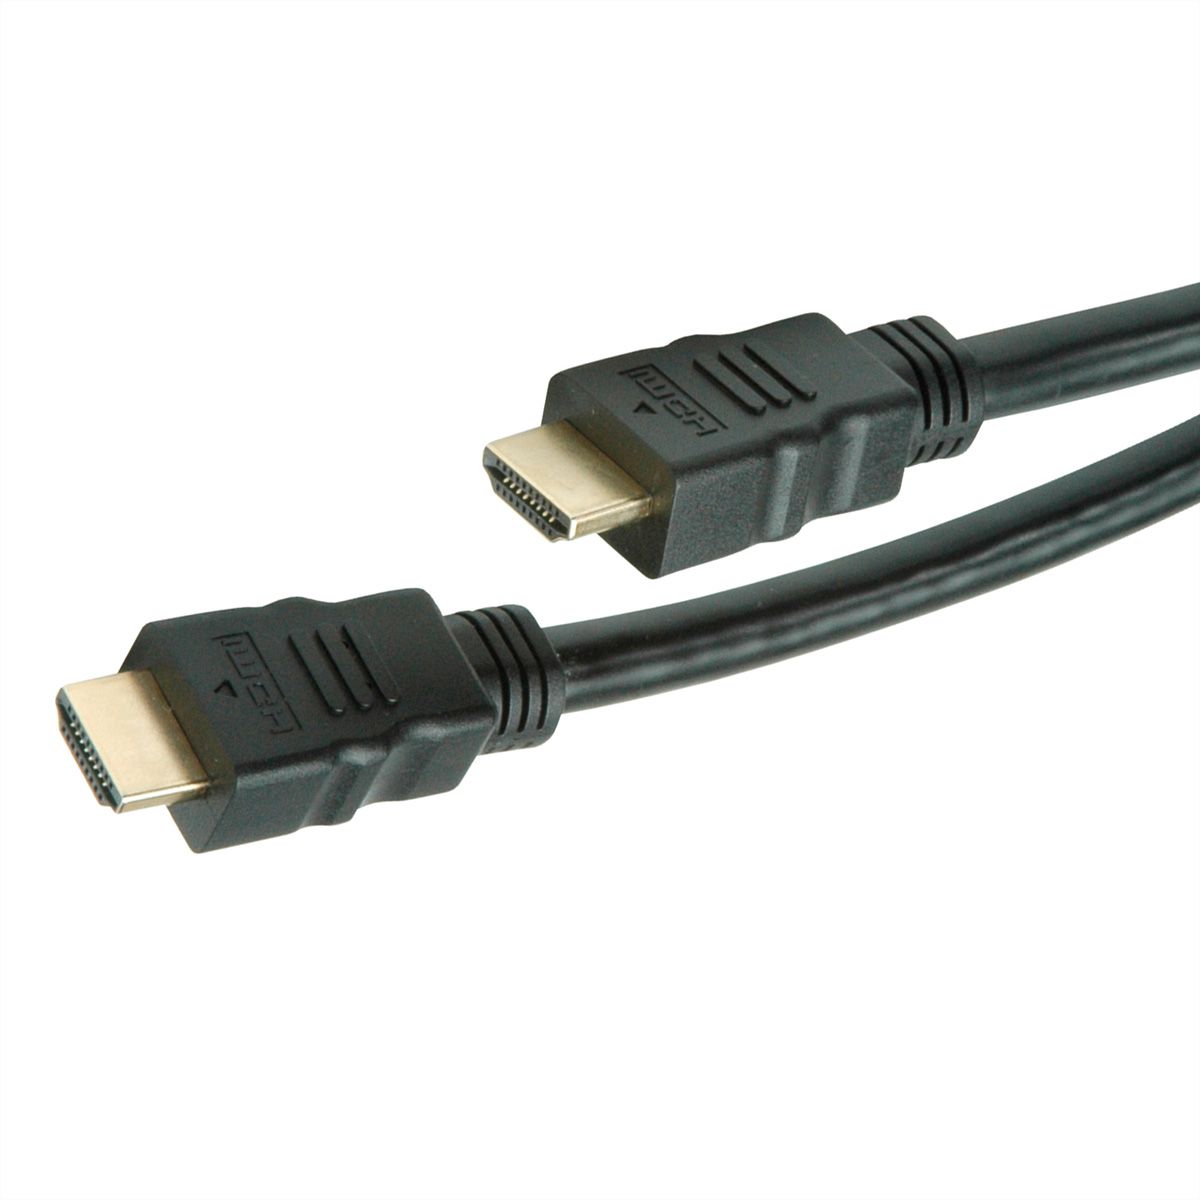 APM Câble HDMI 2.0 Mâle/Mâle 4K 1,8M Or 590465 ≡ CALIPAGE